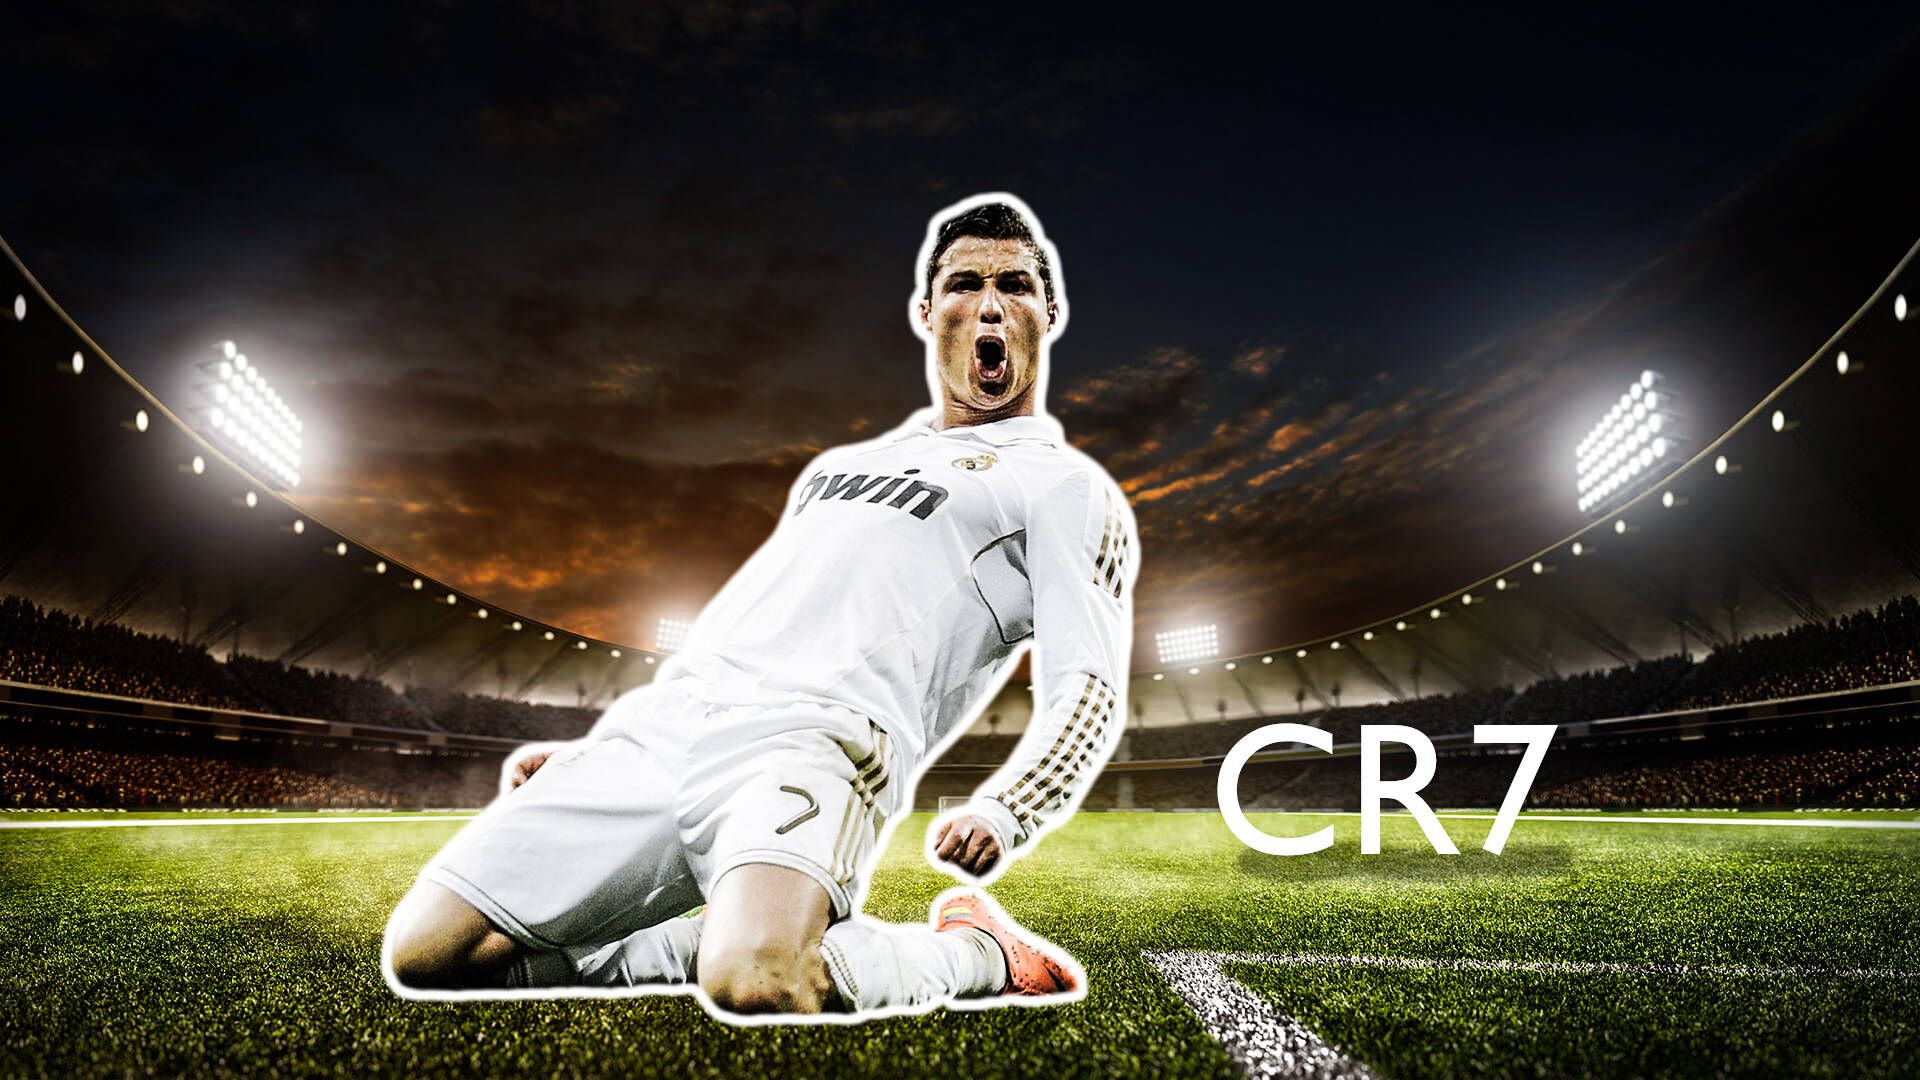  Cristiano Ronaldo Hintergrundbild 1920x1080. Download free Soccer Superstar Cristiano Ronaldo Wallpaper